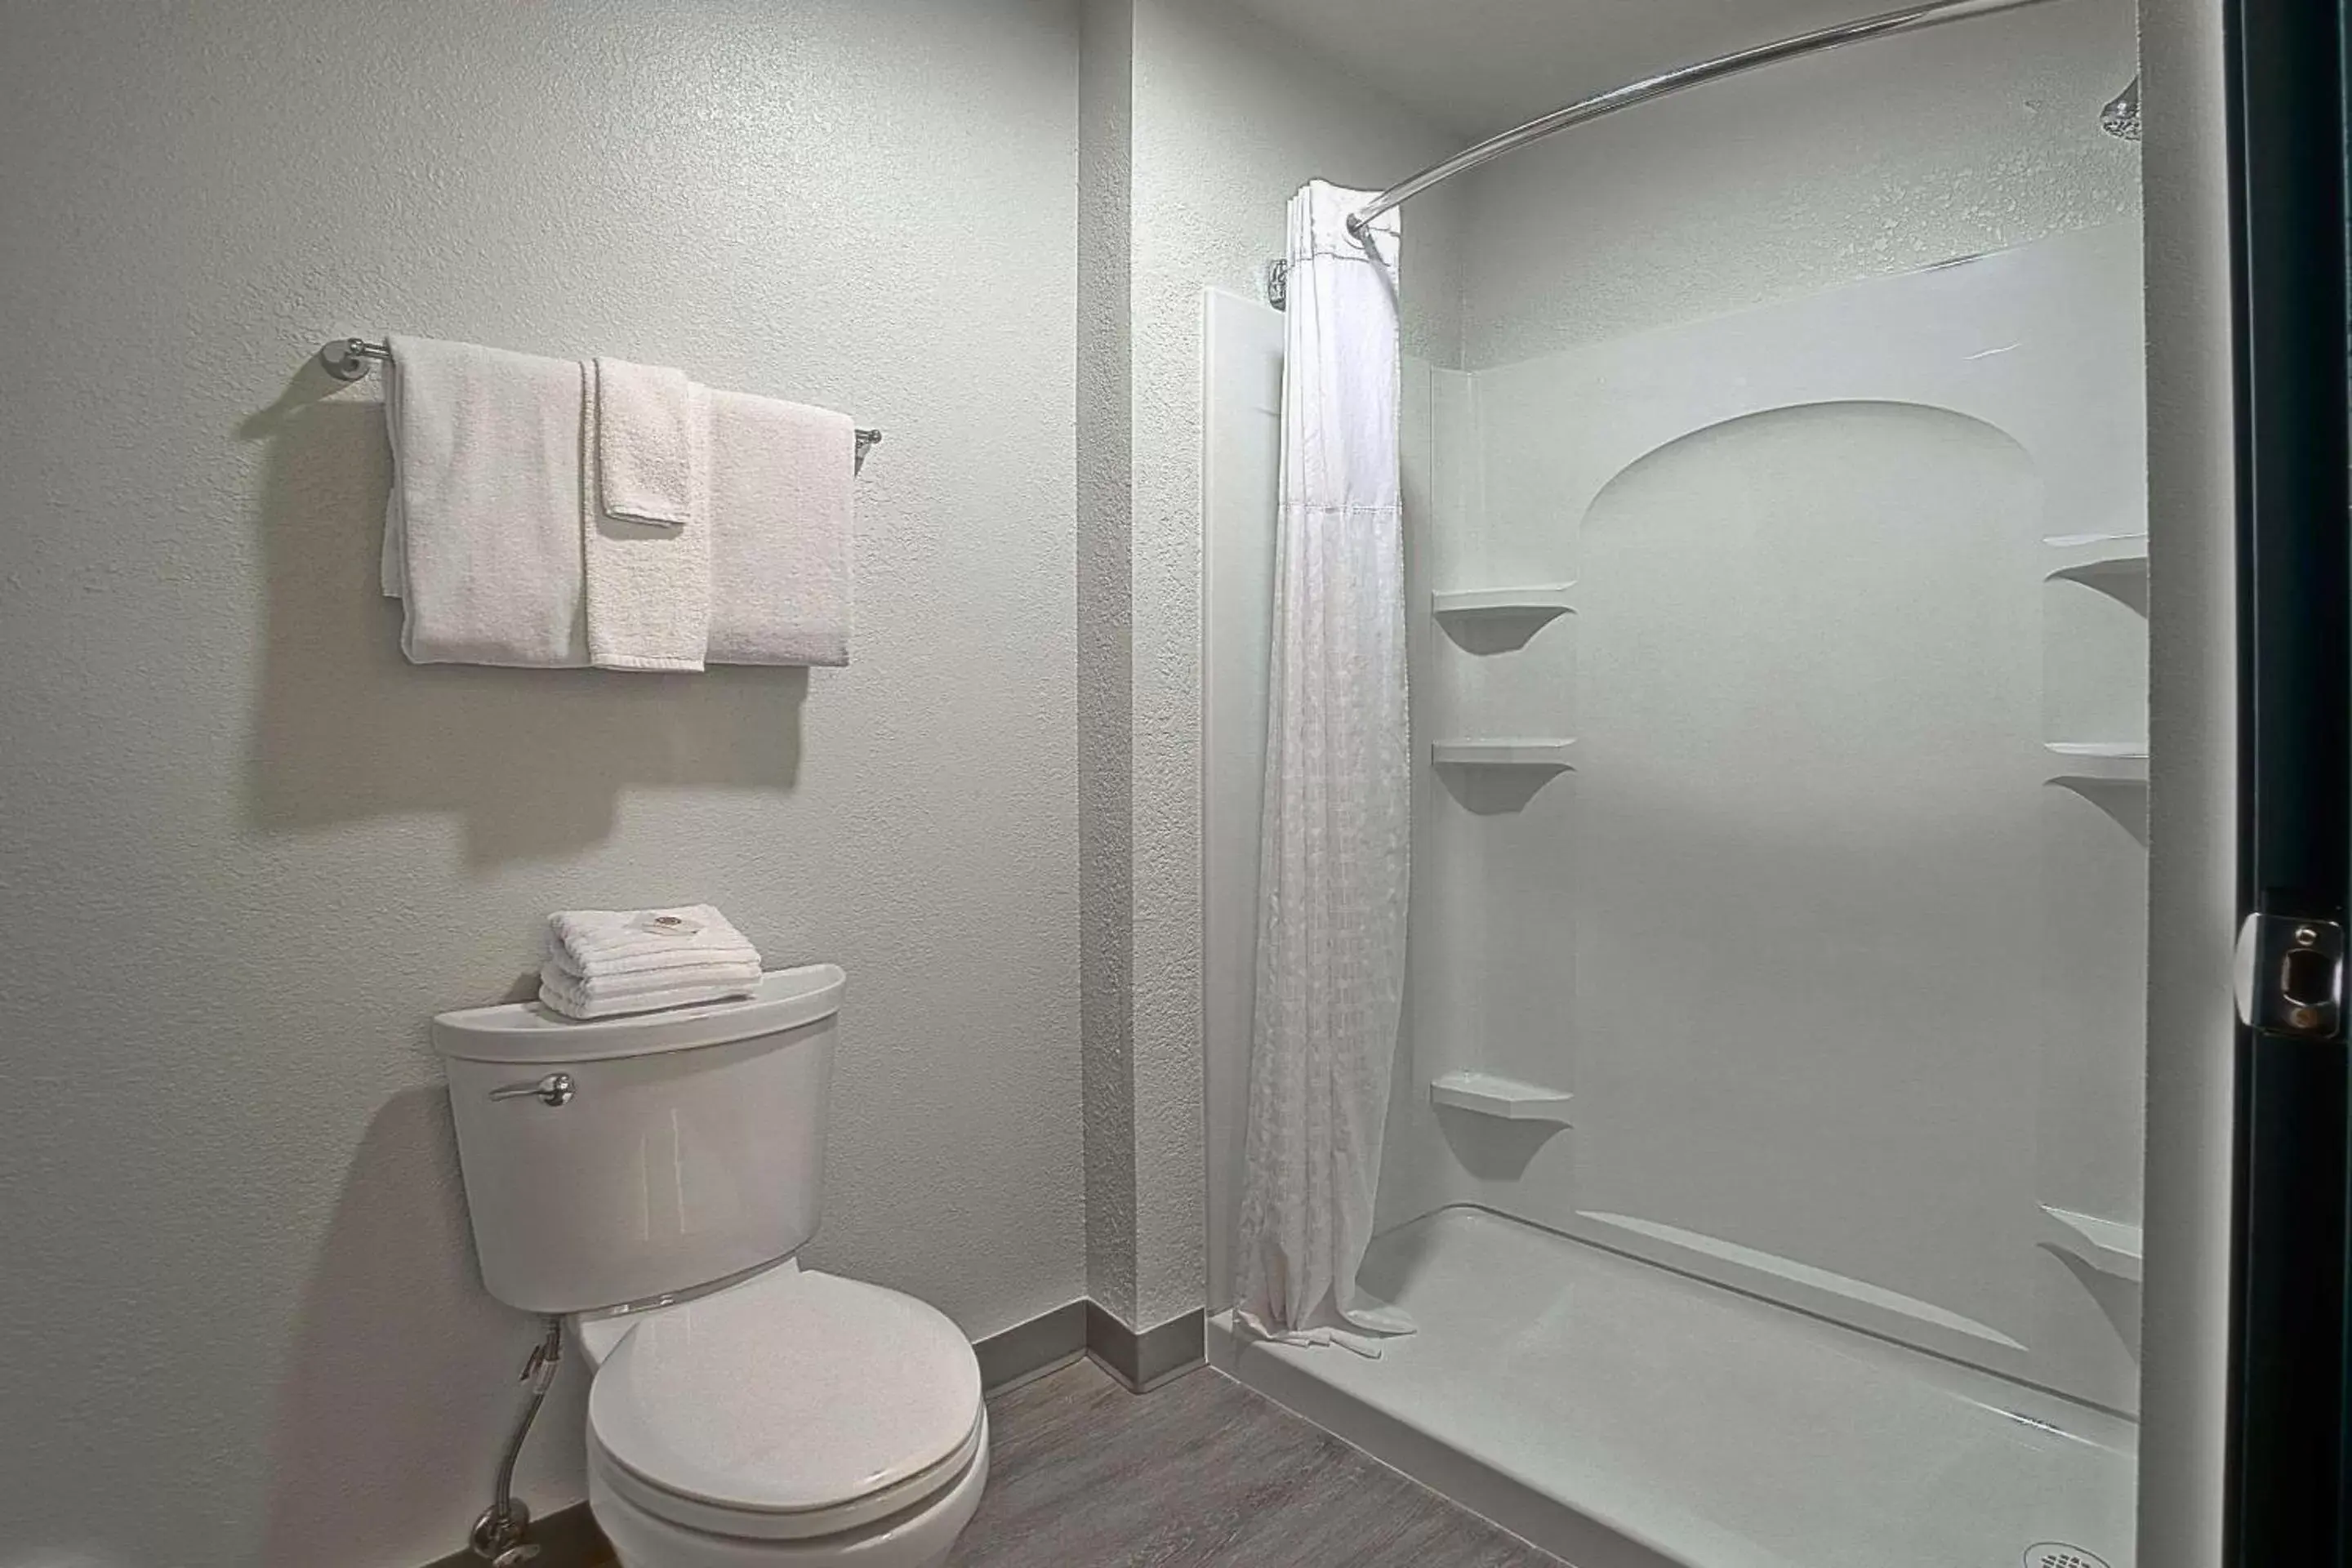 Bedroom, Bathroom in Comfort Inn & Suites Sierra Vista near Ft Huachuca